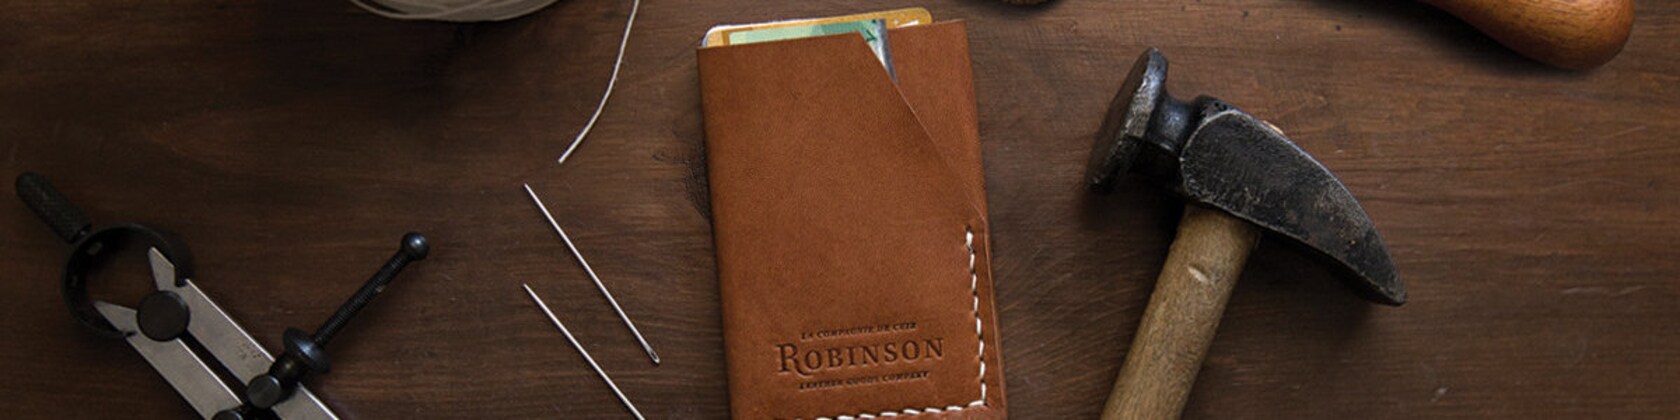 Le sac à bûches cuir et coton ciré, La Compagnie Robinson